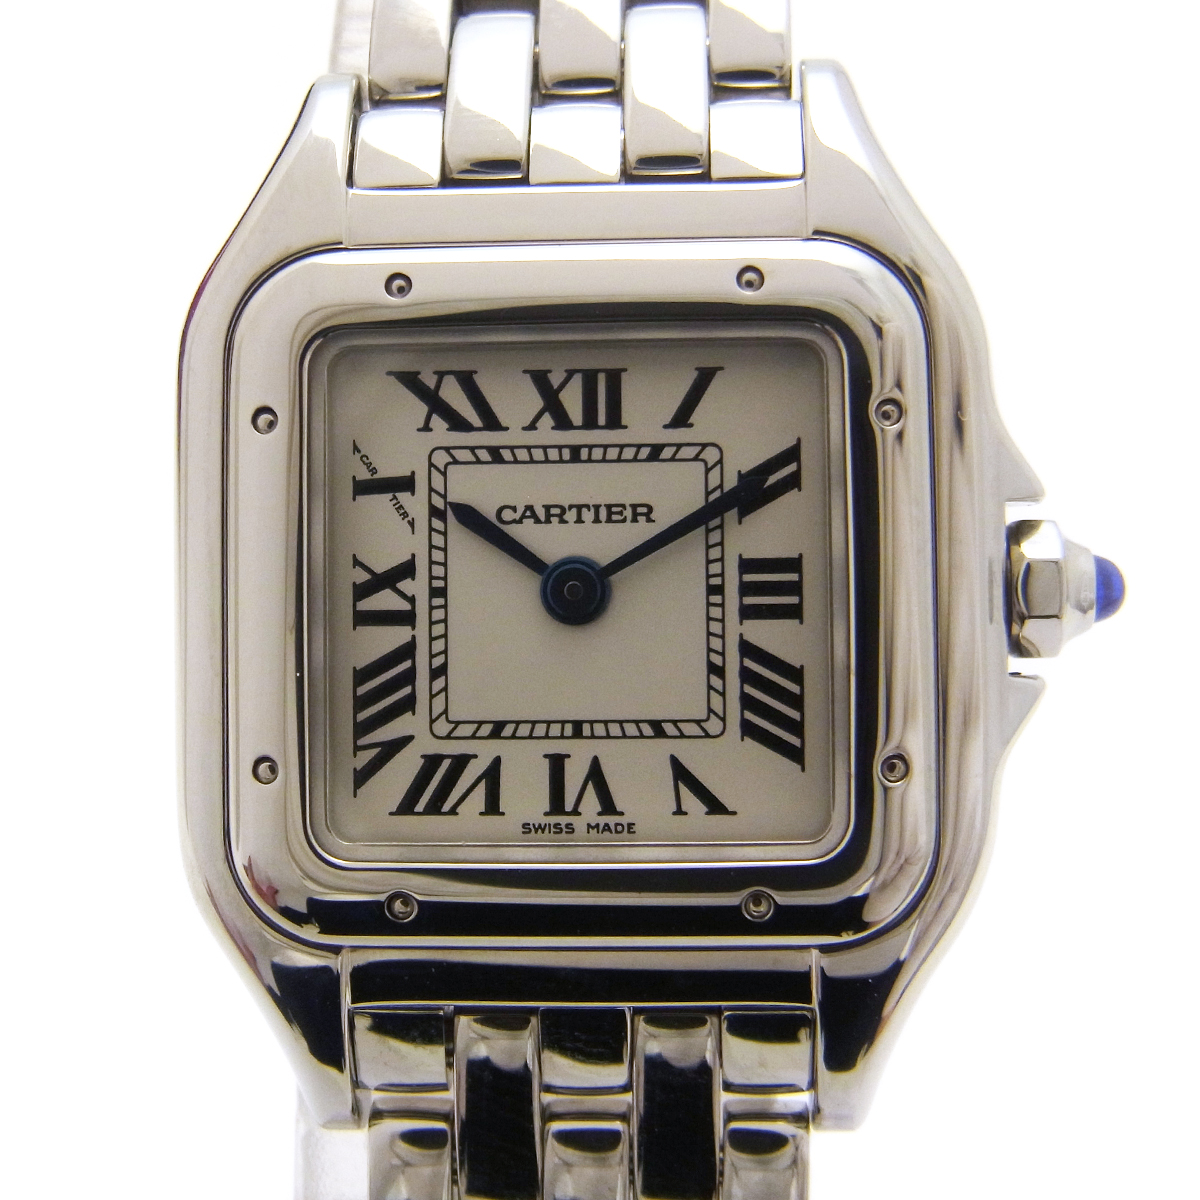 カルティエ (Cartier) パンテール ドゥ カルティエSM 腕時計 WSPN0006 白文字盤 シルバーカラー